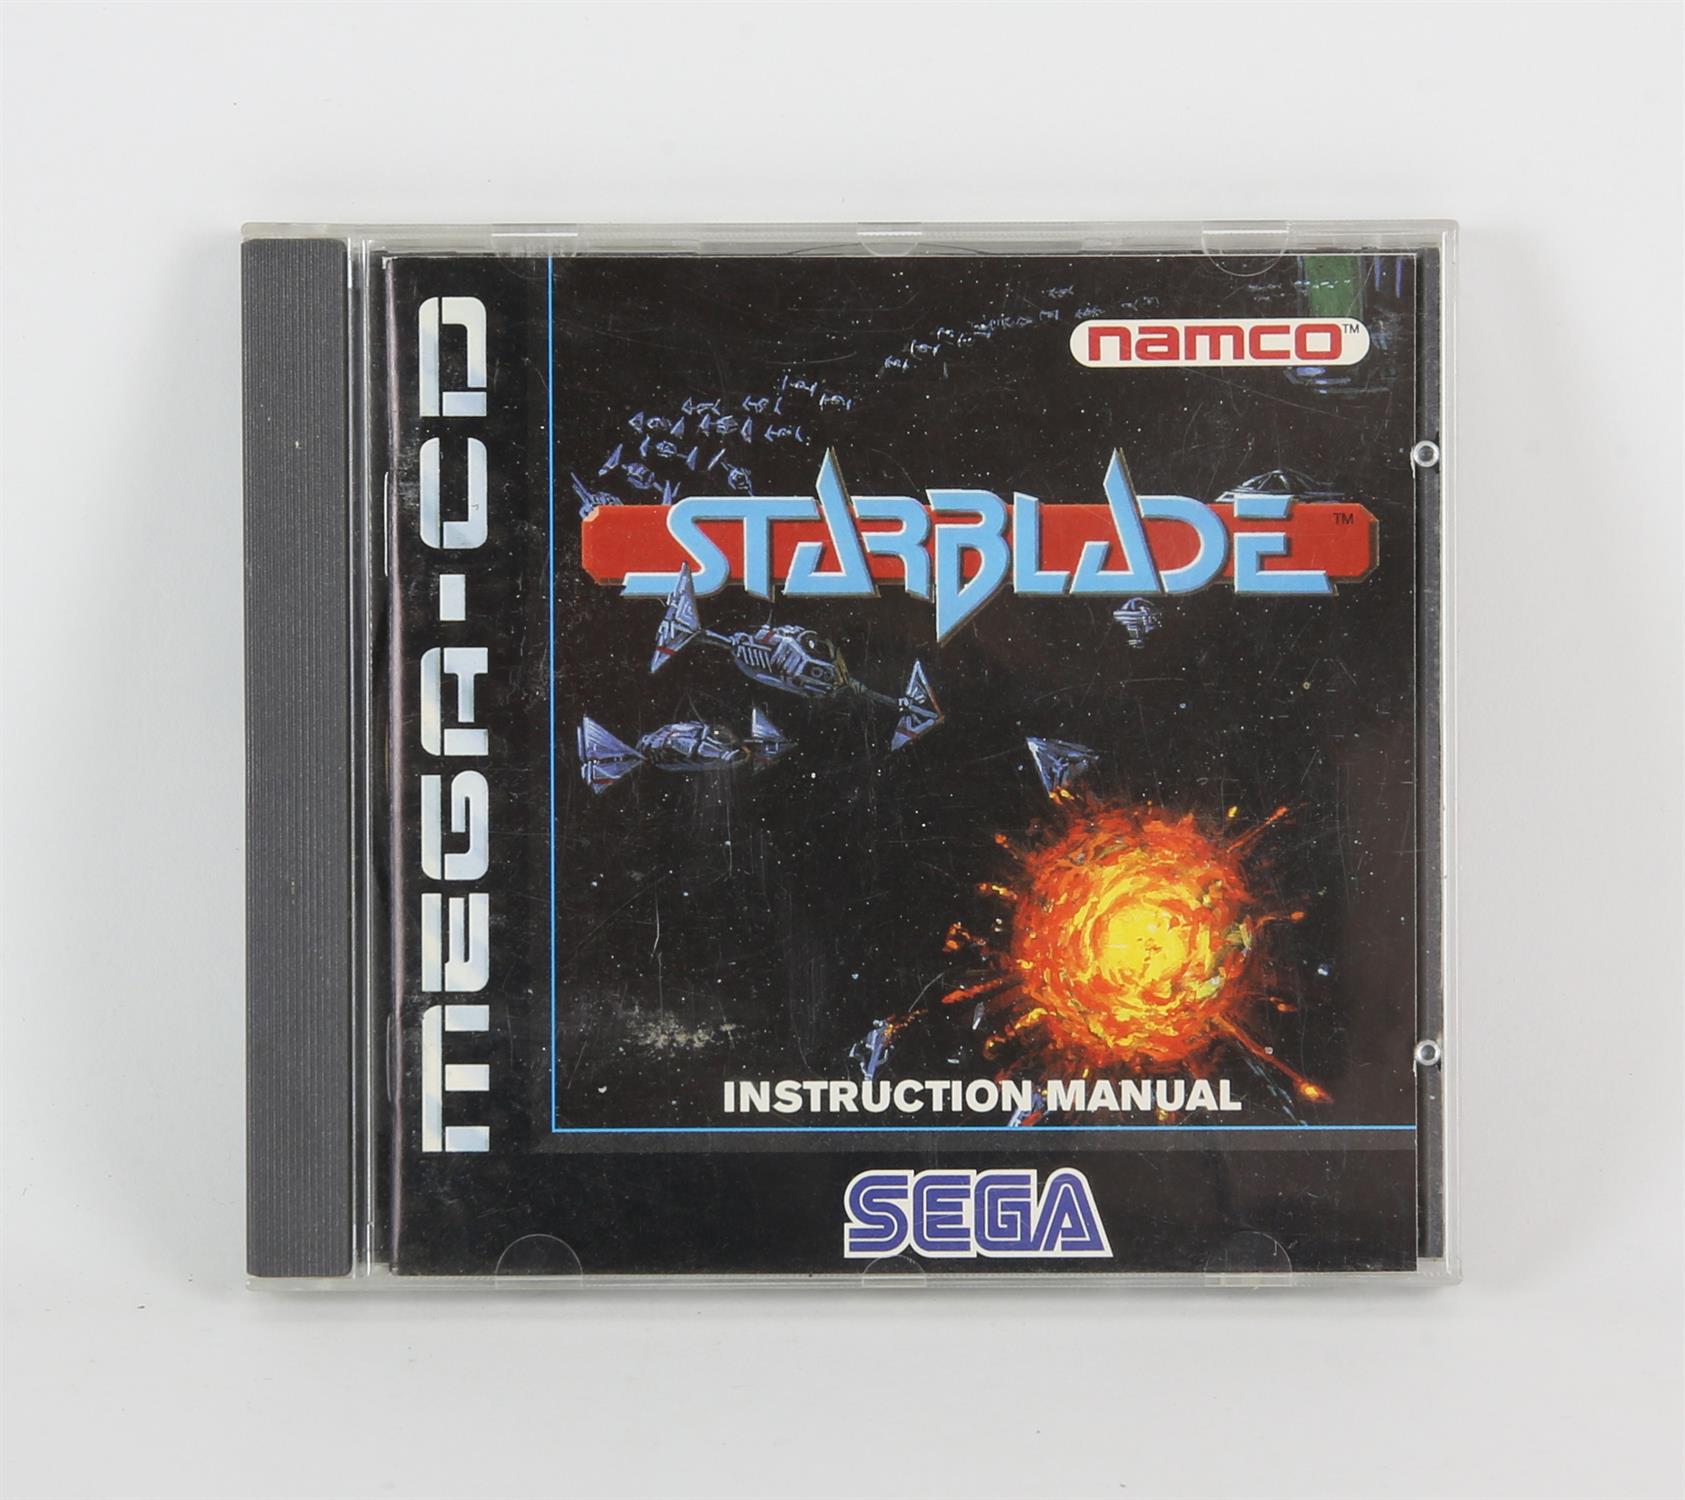 Starblade boxed SEGA Mega-CD game (PAL) - Not original printed disc and packaging